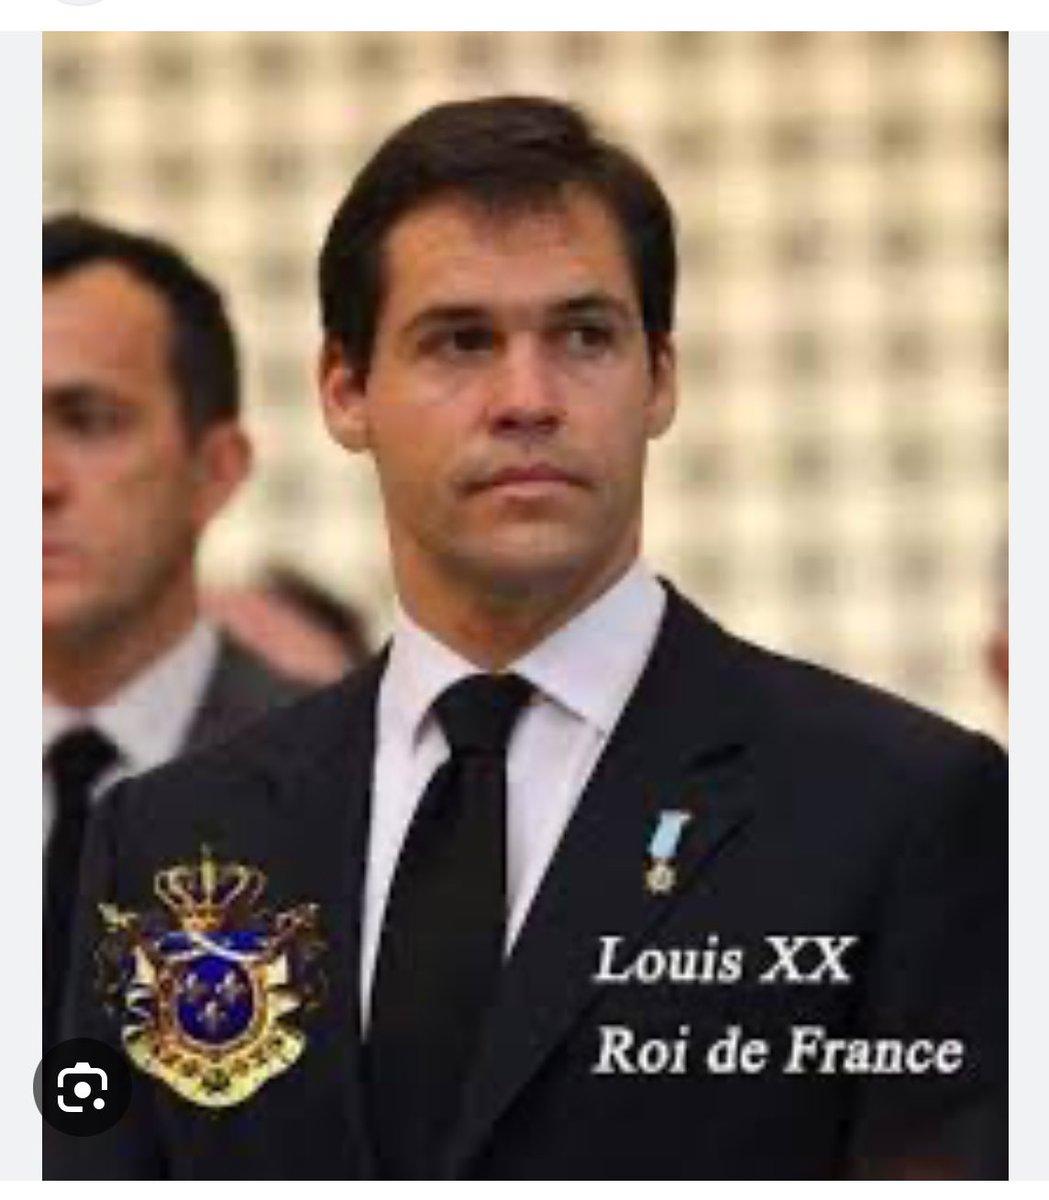 En ce dimanche prions pour le Roi #LouisXX et pour la France ⚜️